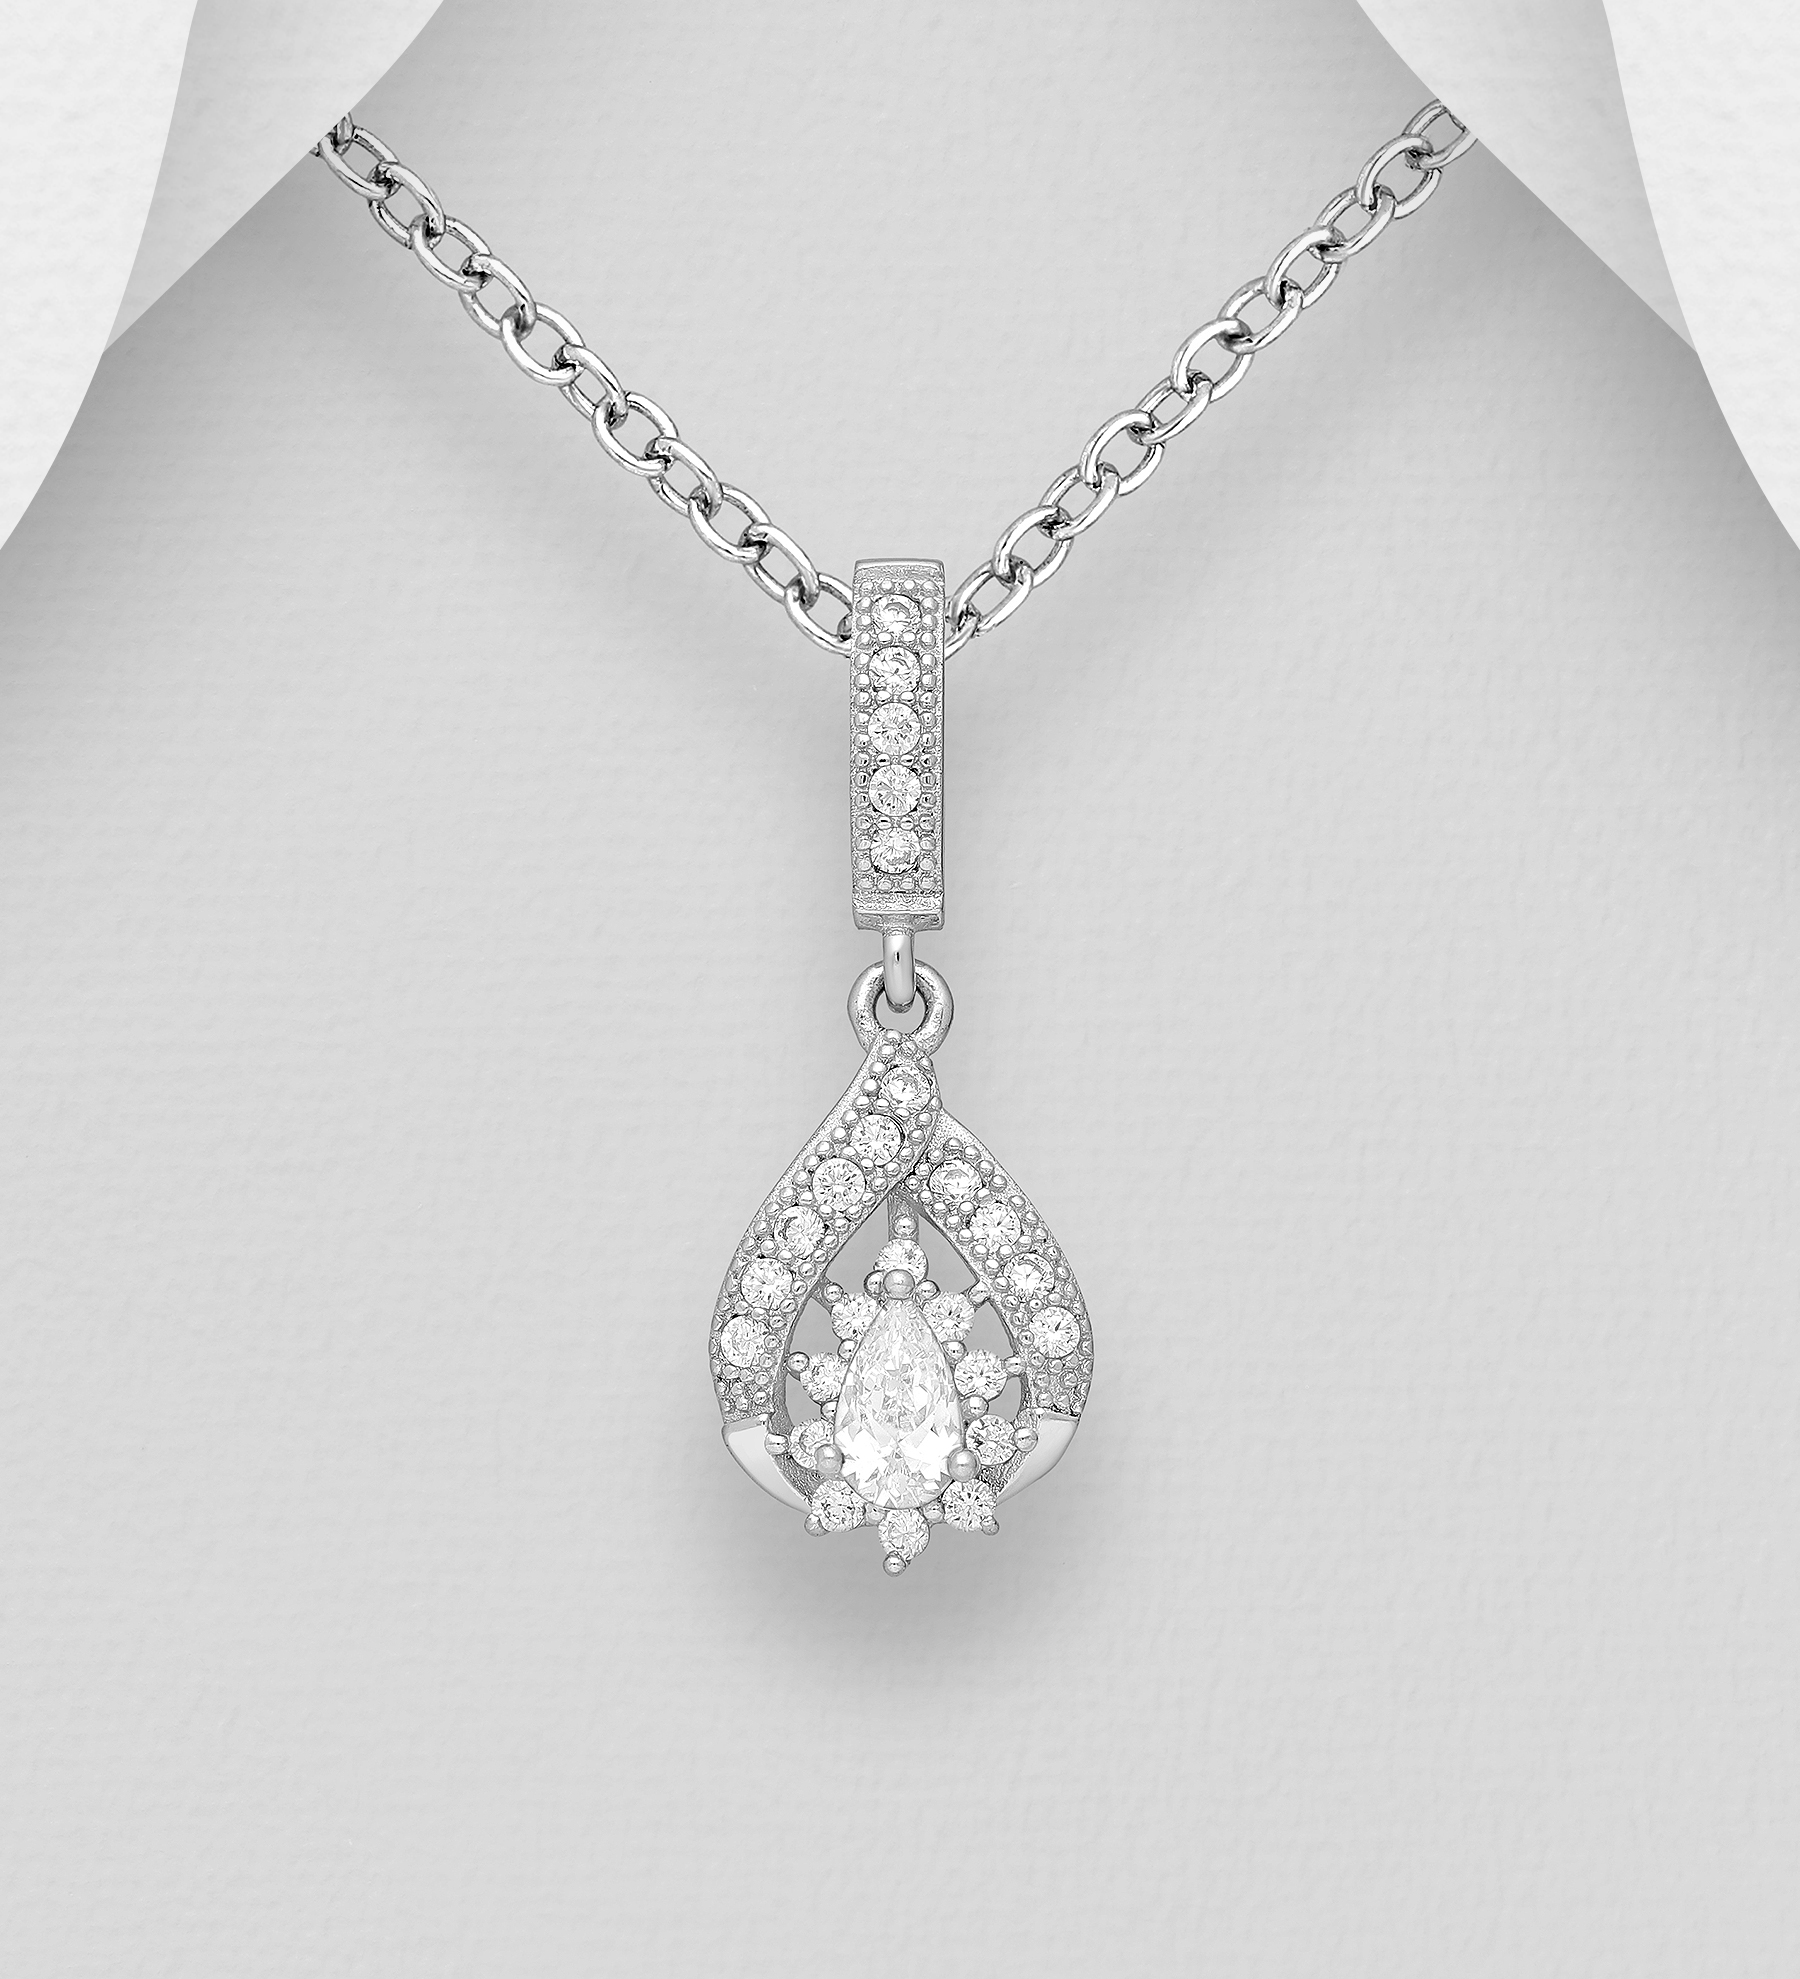 Silverhalsband stilfullt hänge med glittrande stenar - elegant halsband till tjej/ dam i äkta 925 sterling silver